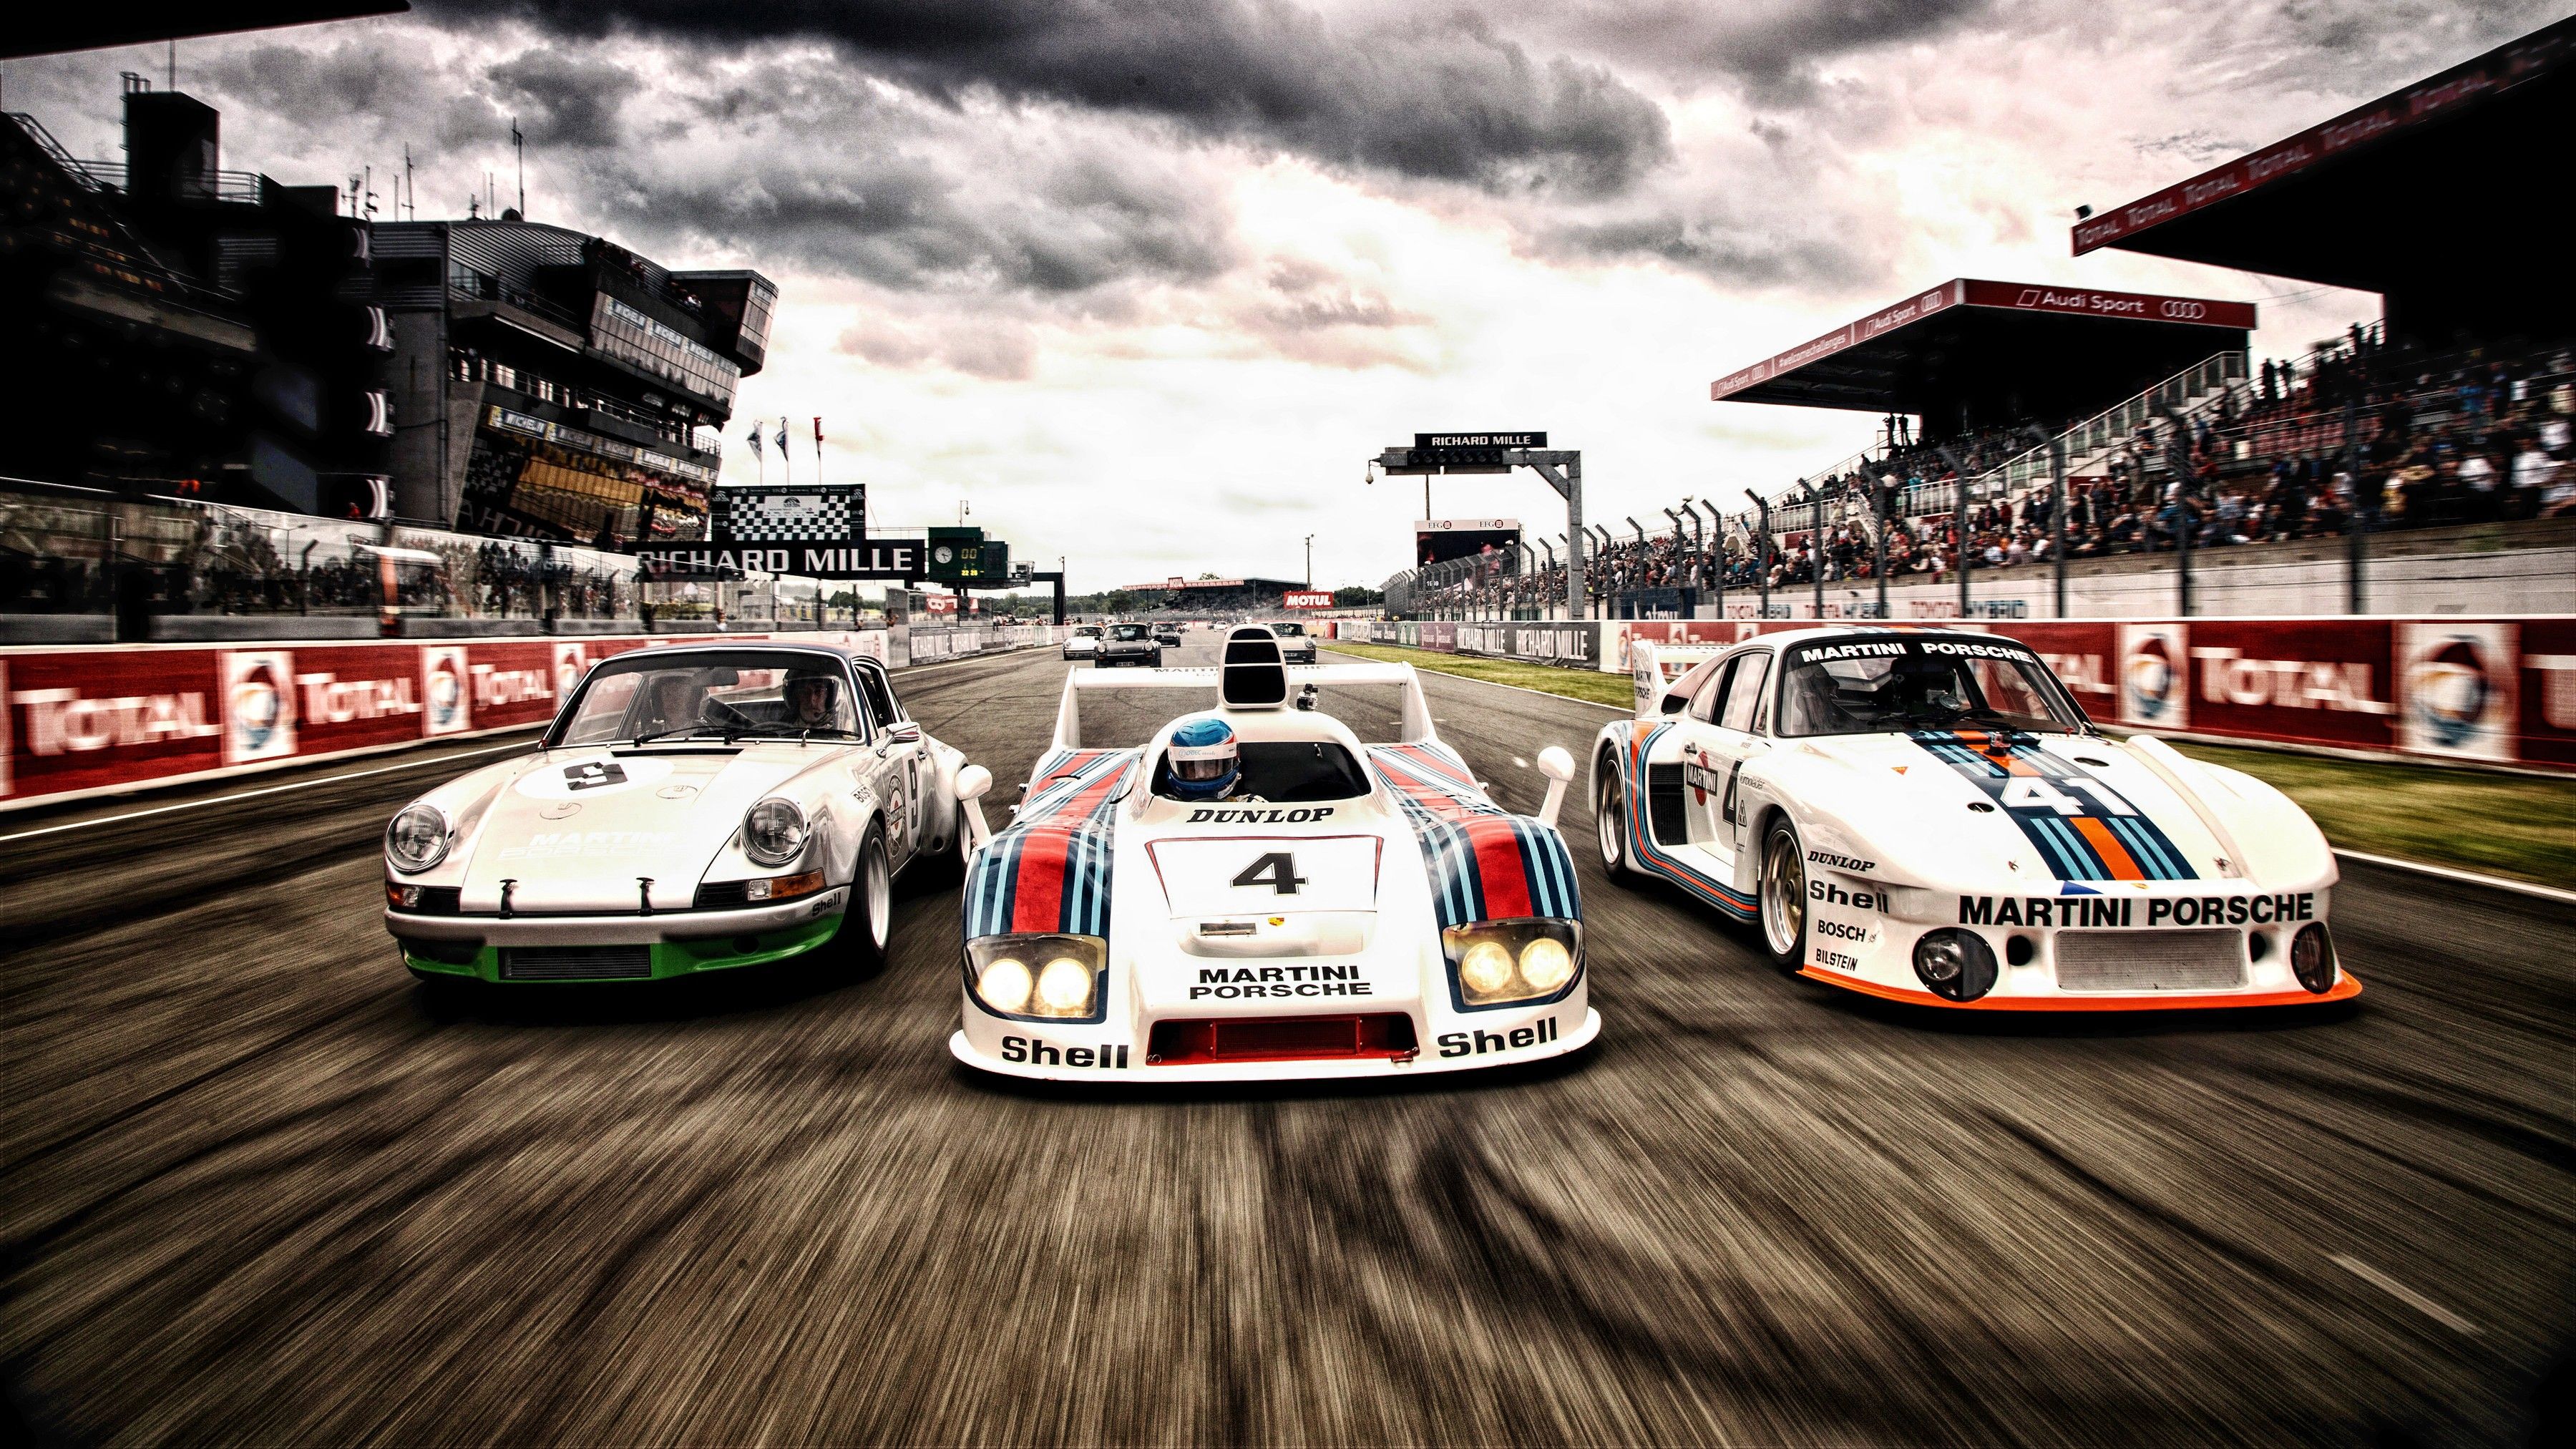 Wallpaper, 3600x2025 px, car, Porsche, race cars 3600x2025